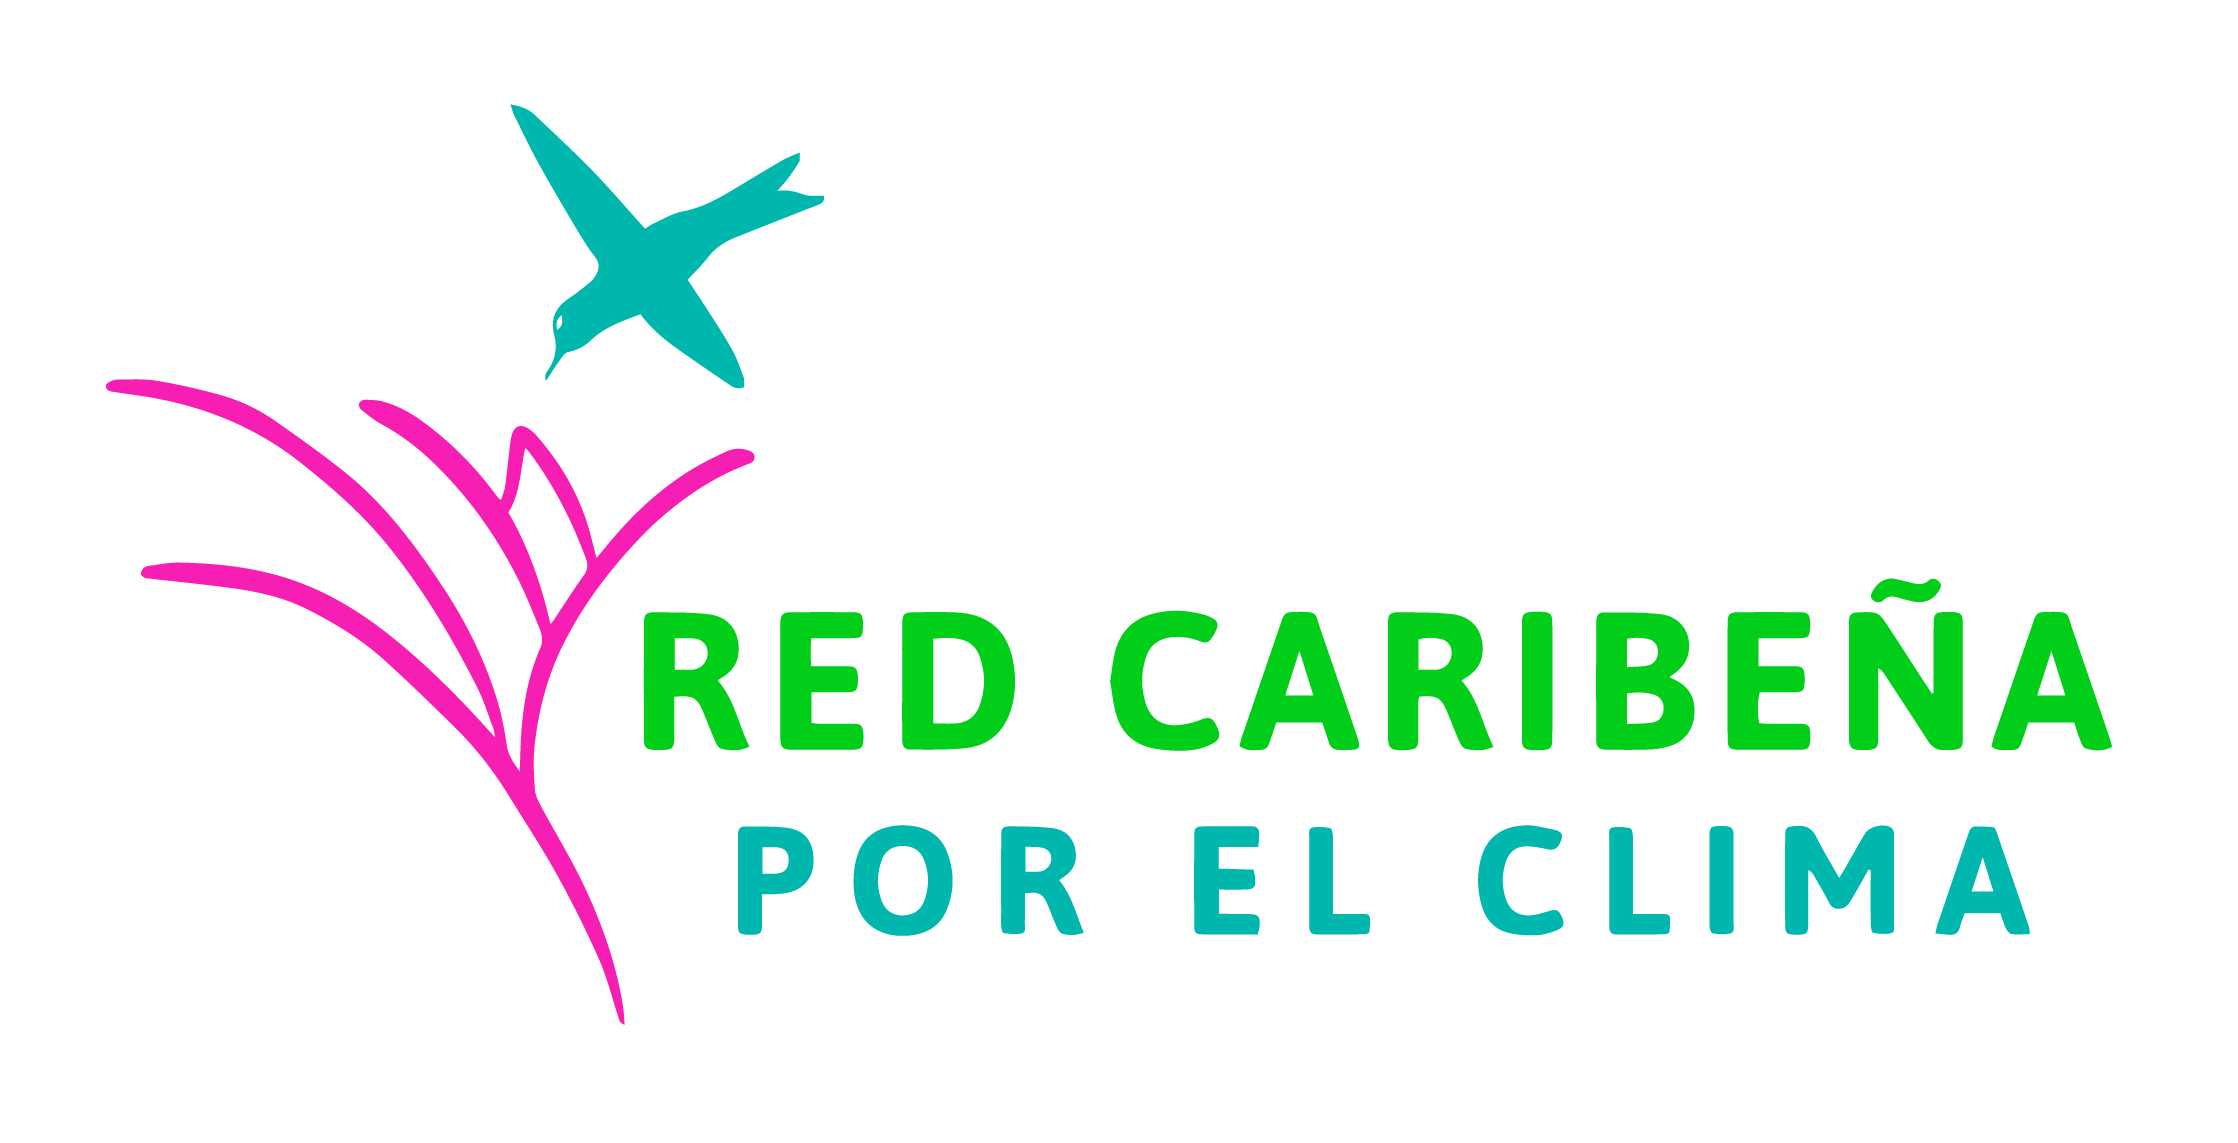 Red Caribeña por el clima